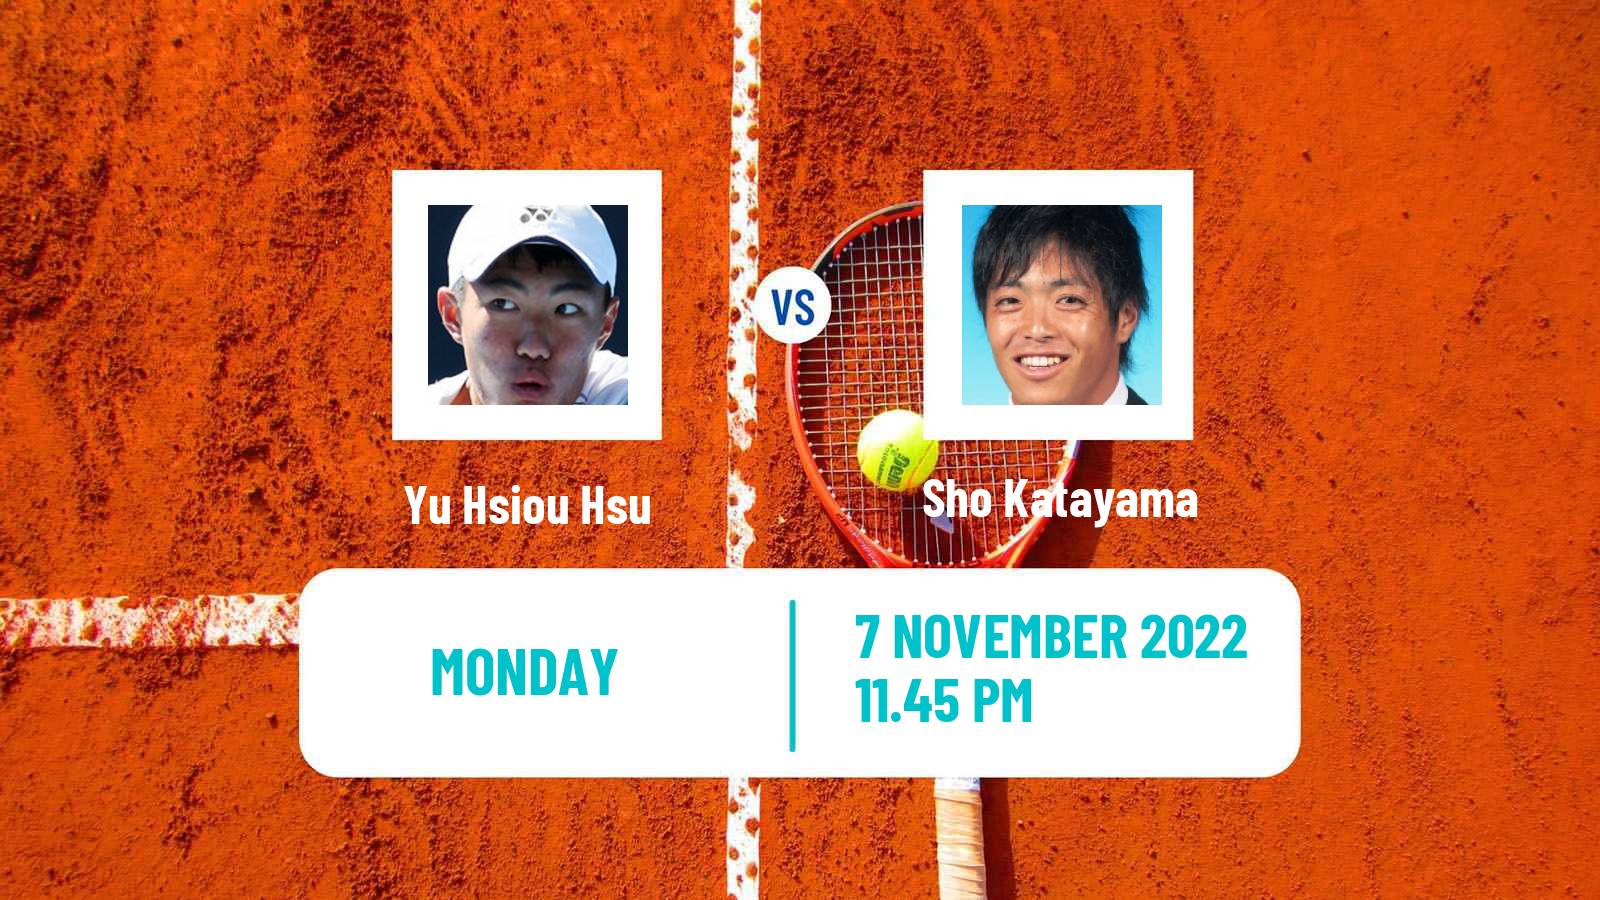 Tennis ATP Challenger Yu Hsiou Hsu - Sho Katayama